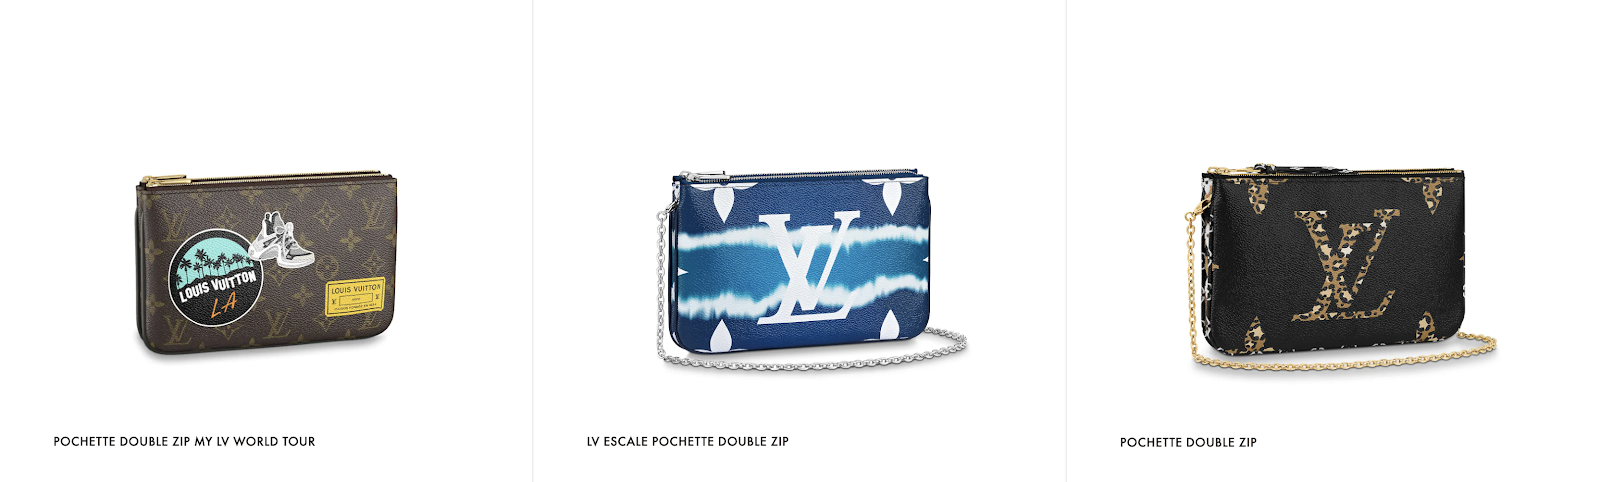 Shop Louis Vuitton Lv escale pochette double zip (M69124) by SkyNS